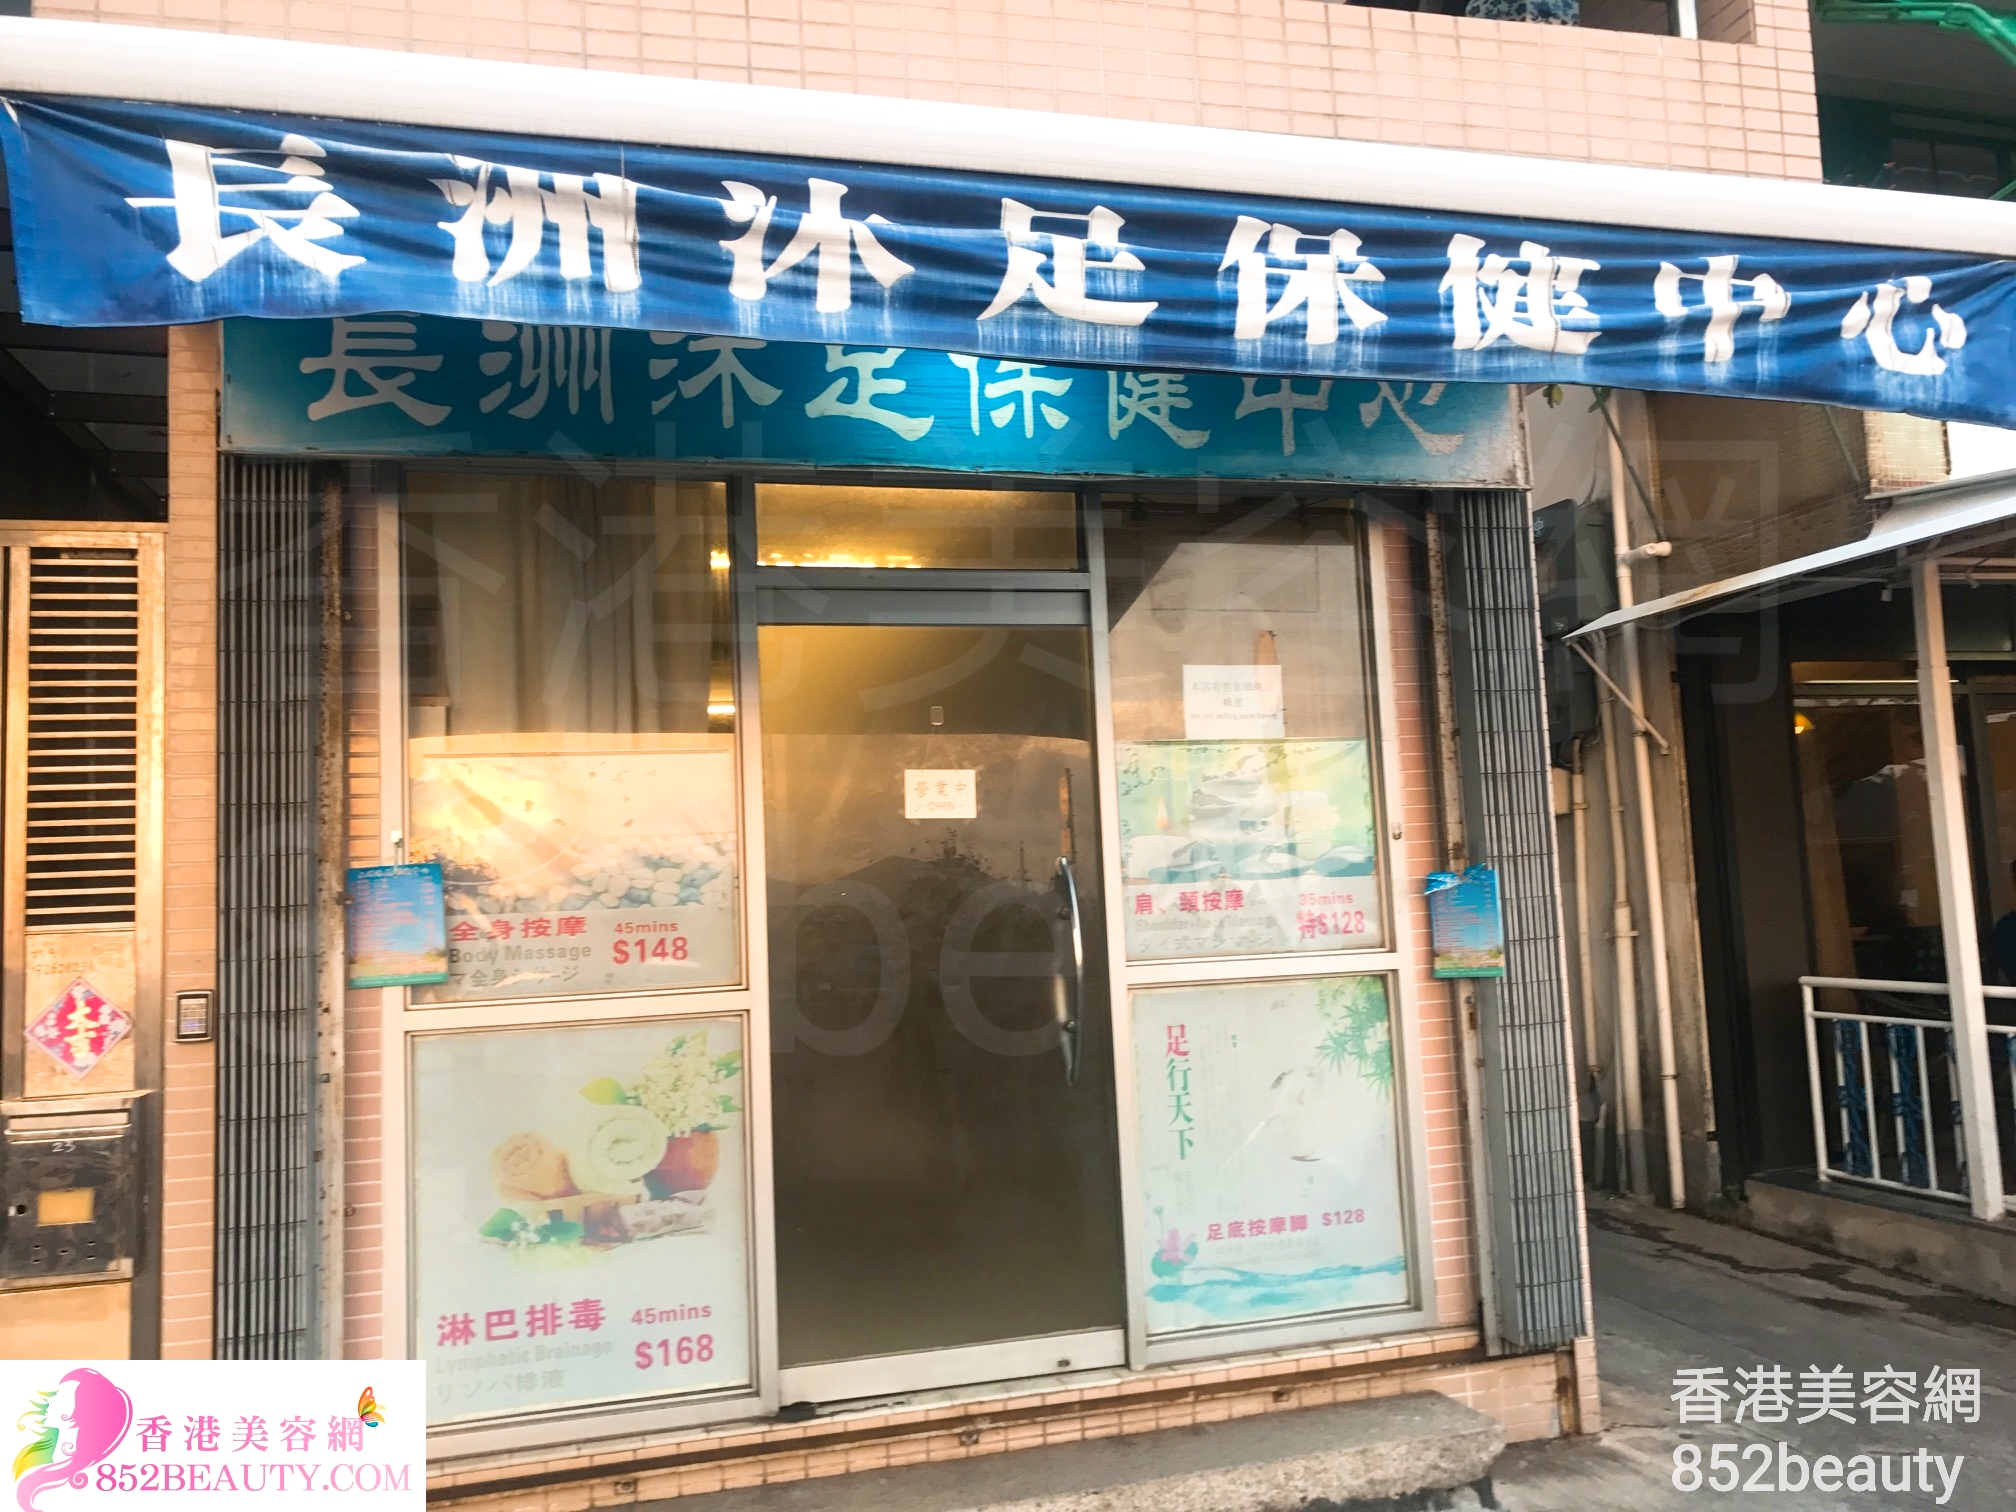 香港美容網 Hong Kong Beauty Salon 美容院 / 美容師: 長洲沐足保健中心